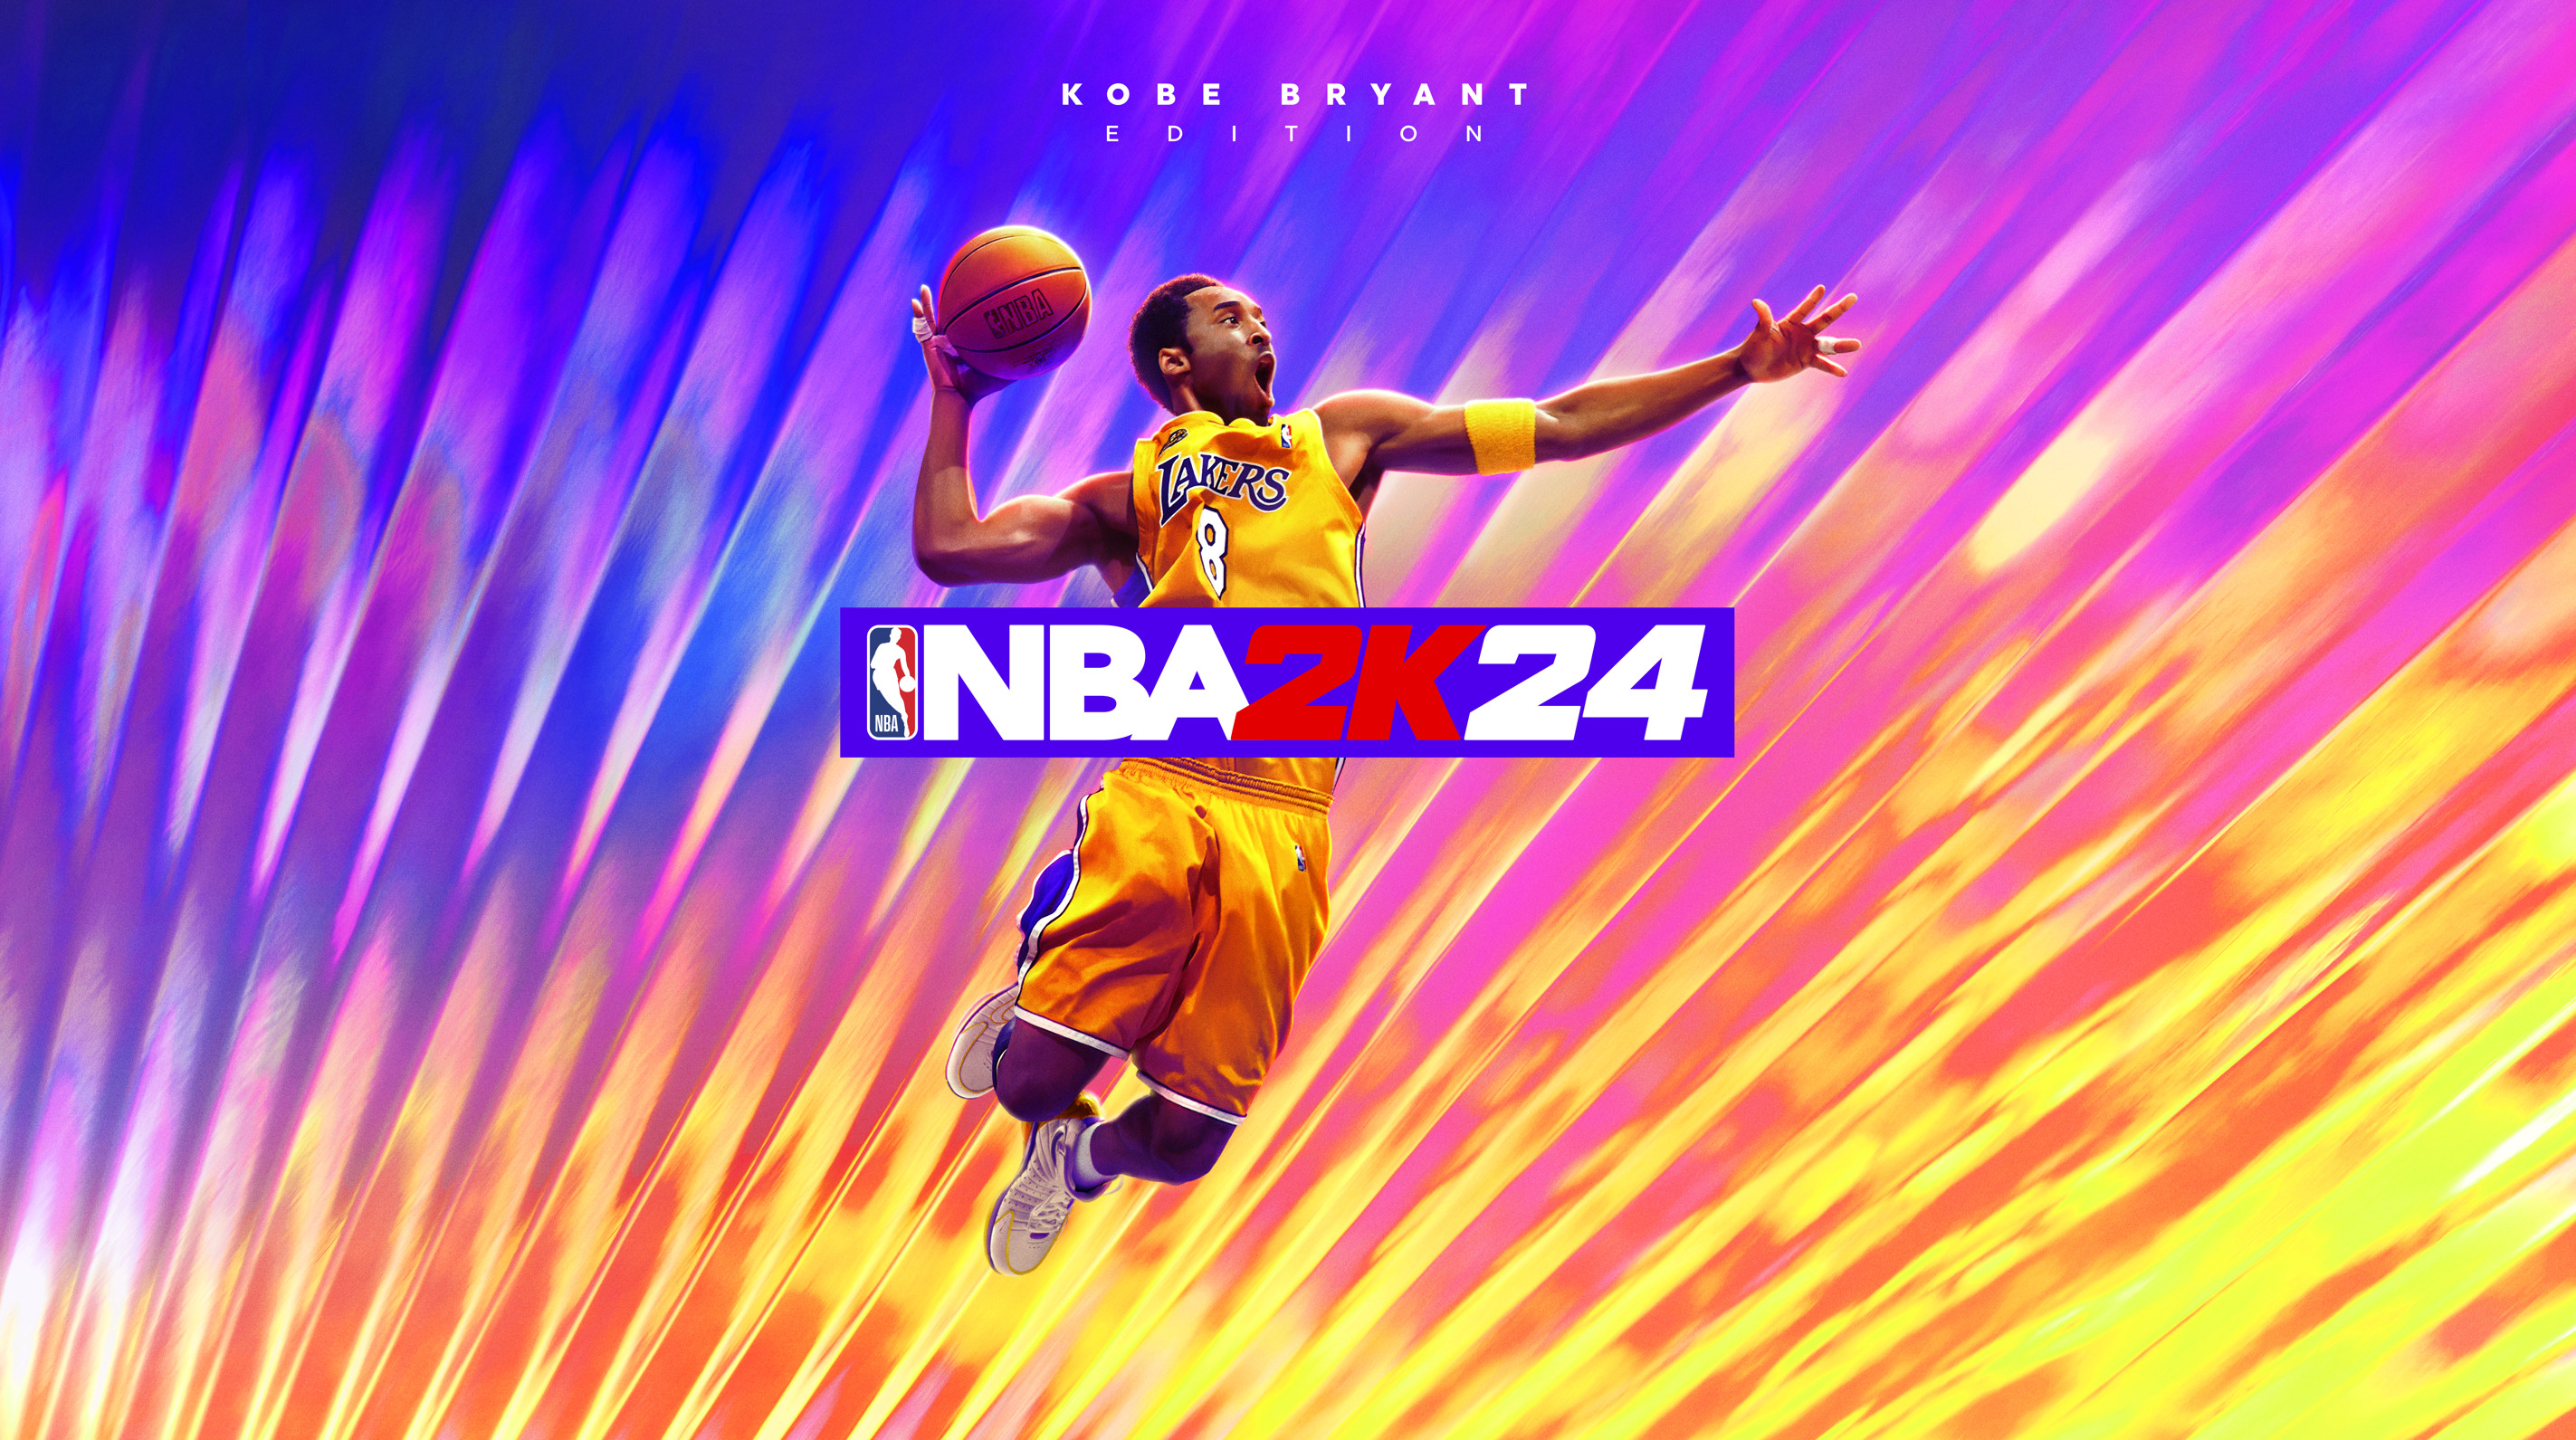 《NBA 2K24》官宣 科比·布莱恩特成为封面人物